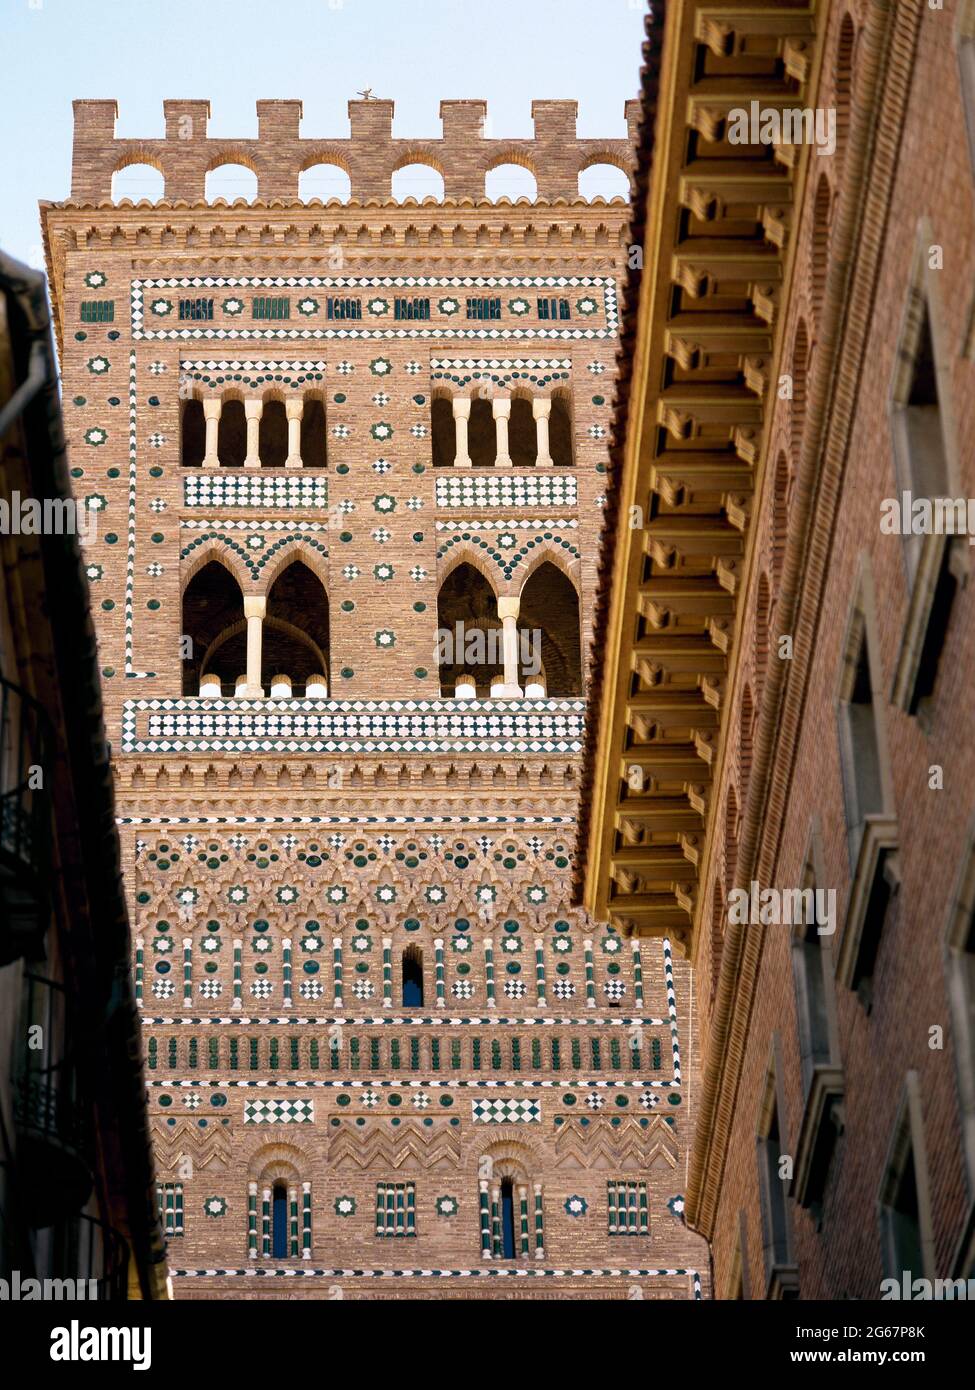 Espagne, Aragón, Teruel. Tour d'El Salvador. Il a été construit dans le style Mudéjar entre la deuxième et la troisième décennie du XIVe siècle, avec des carreaux de décoration. Il a été reconstruit en 1677 après son effondrement. Site du patrimoine mondial. Banque D'Images